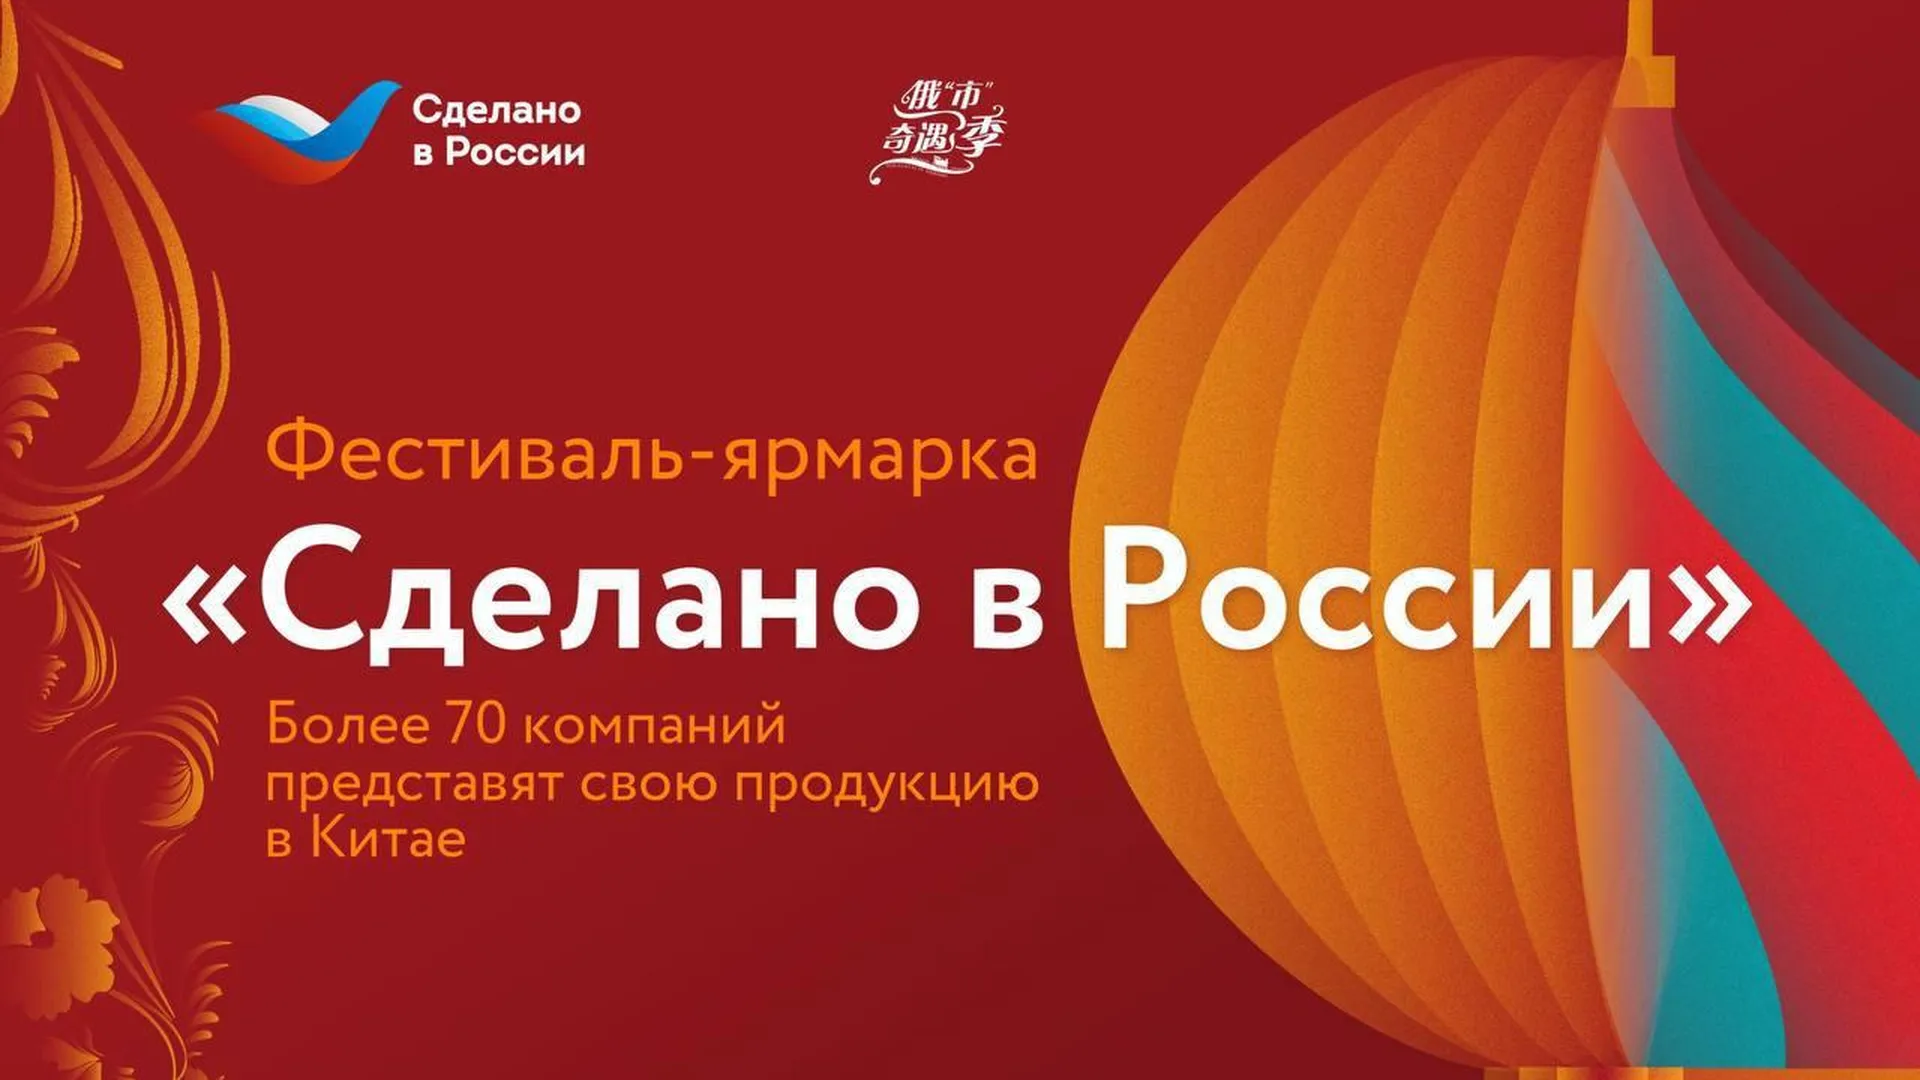 Более 70 компаний представят свою продукцию на фестивале «Сделано в России» в Китае